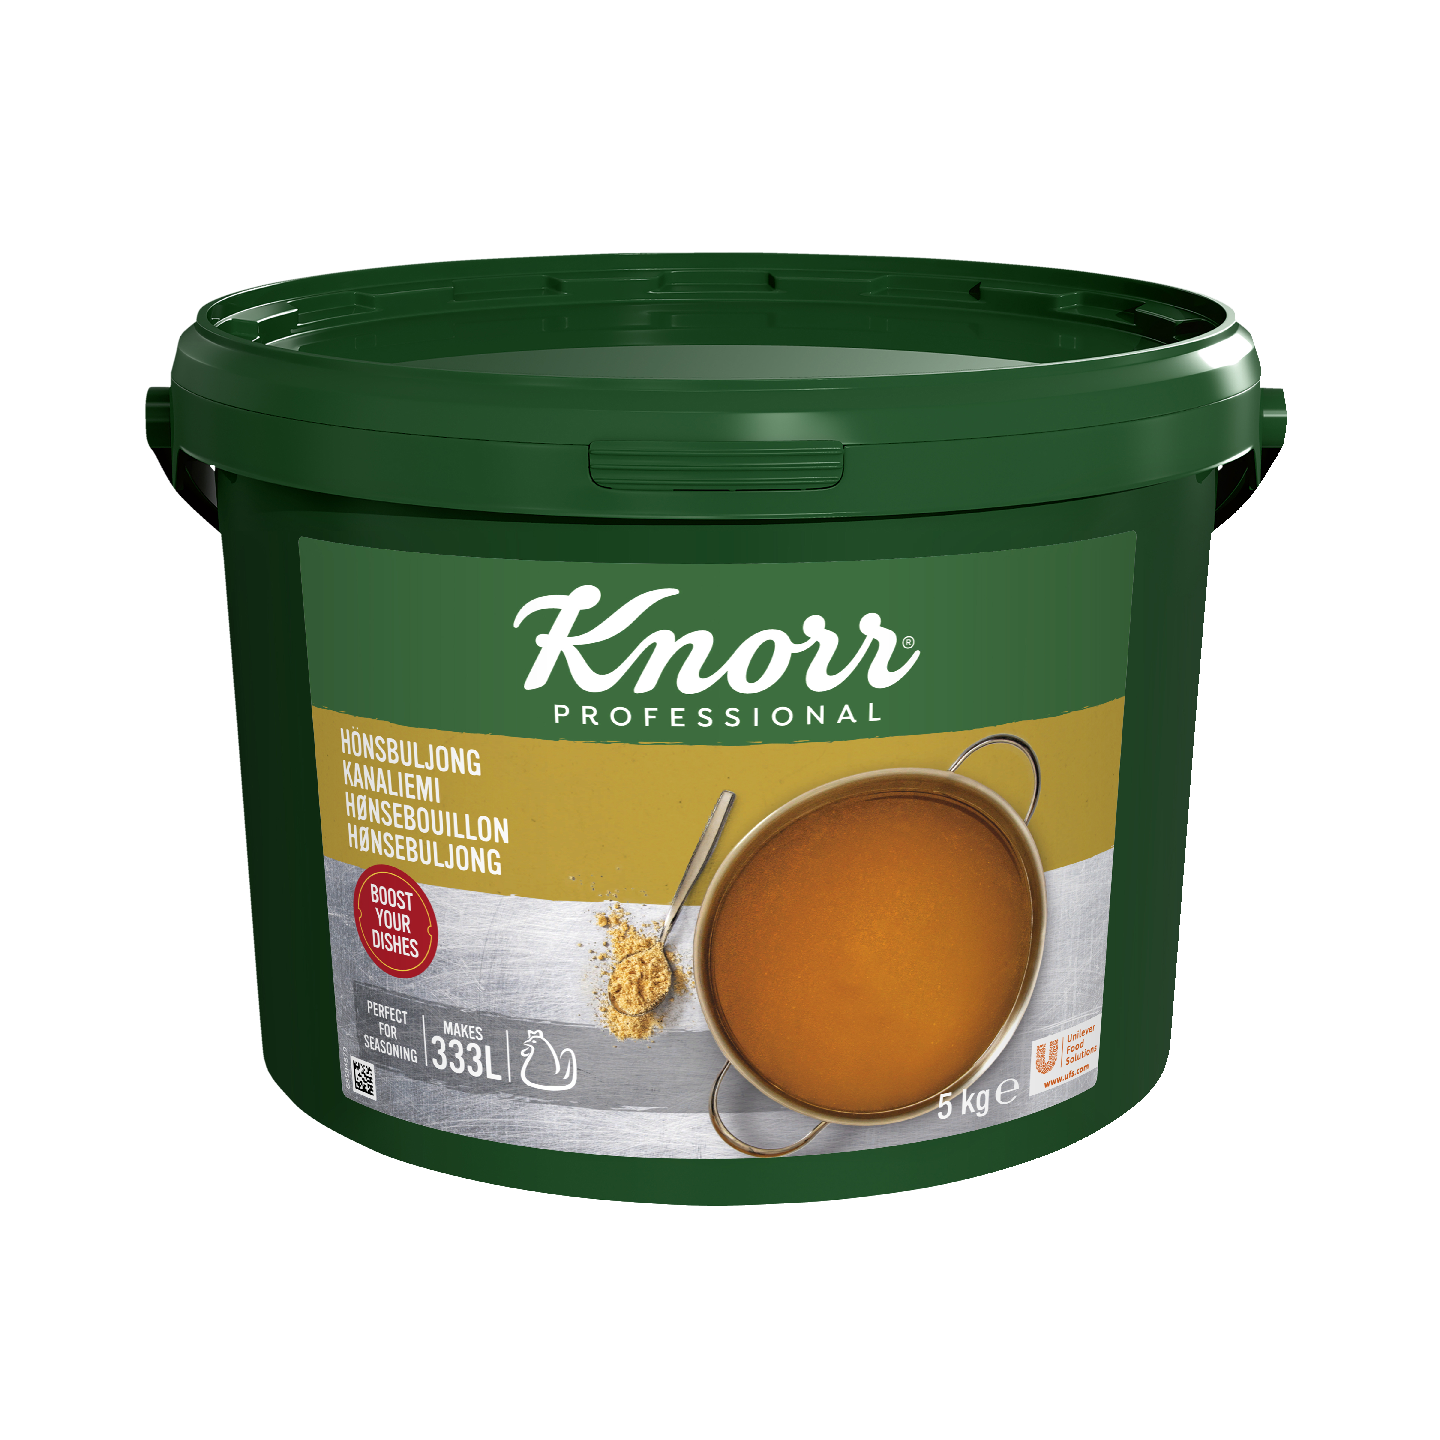 Knorr kanaliemi 5kg/333l